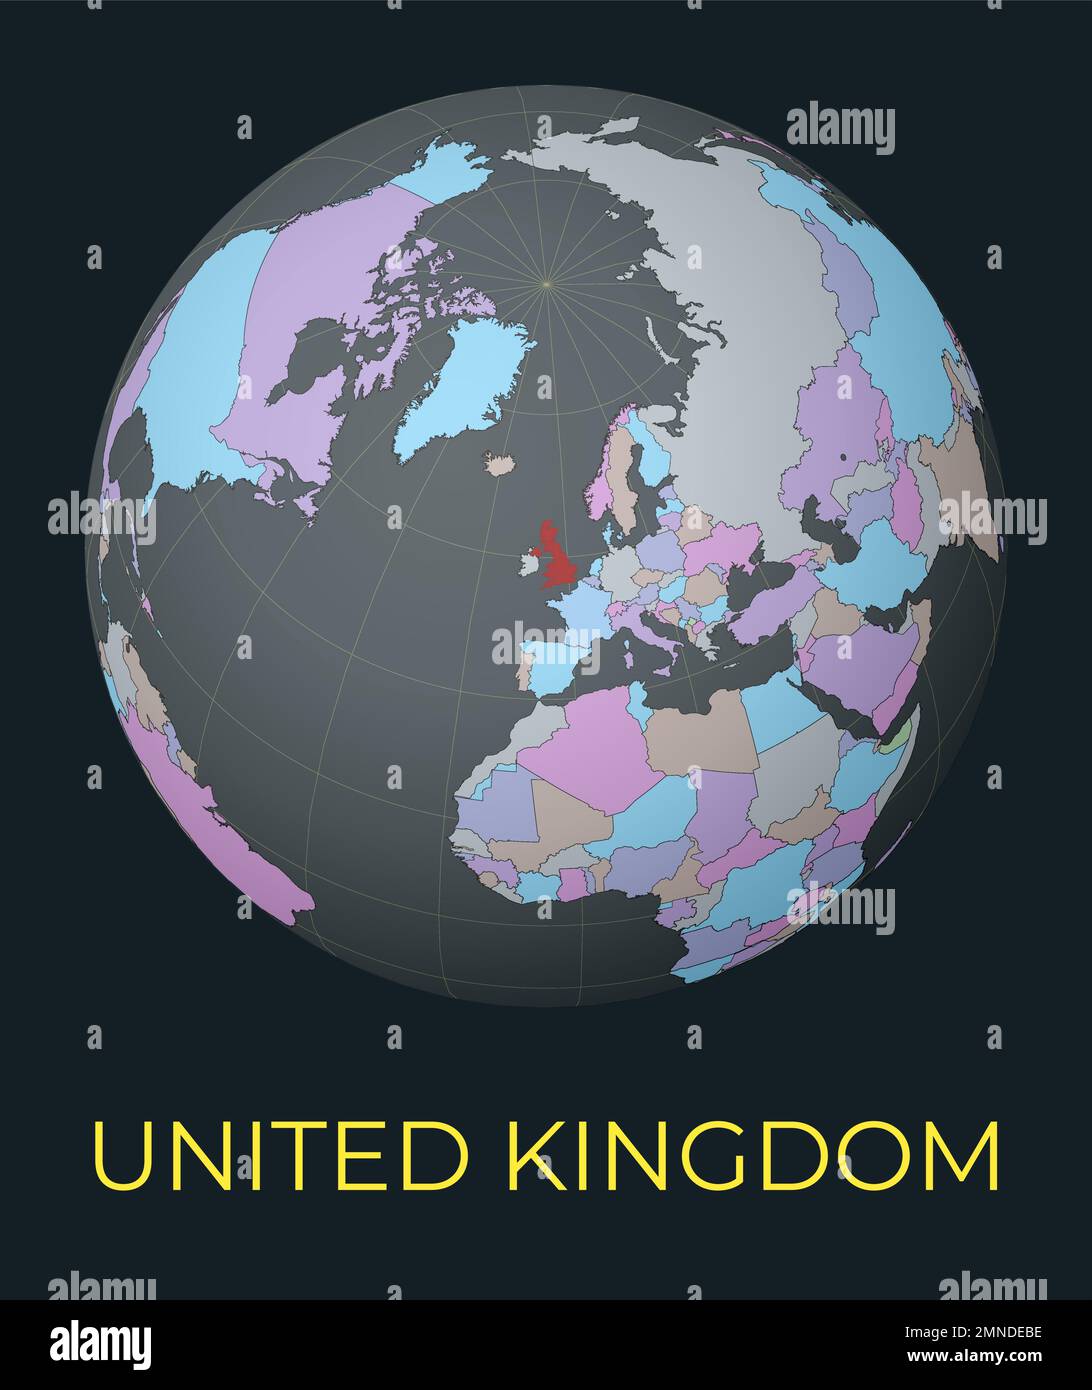 Weltkarte mit Schwerpunkt auf Großbritannien. Rot markiert. Satelliten-Weltansicht auf Land mit Namen zentriert. Vektordarstellung. Stock Vektor